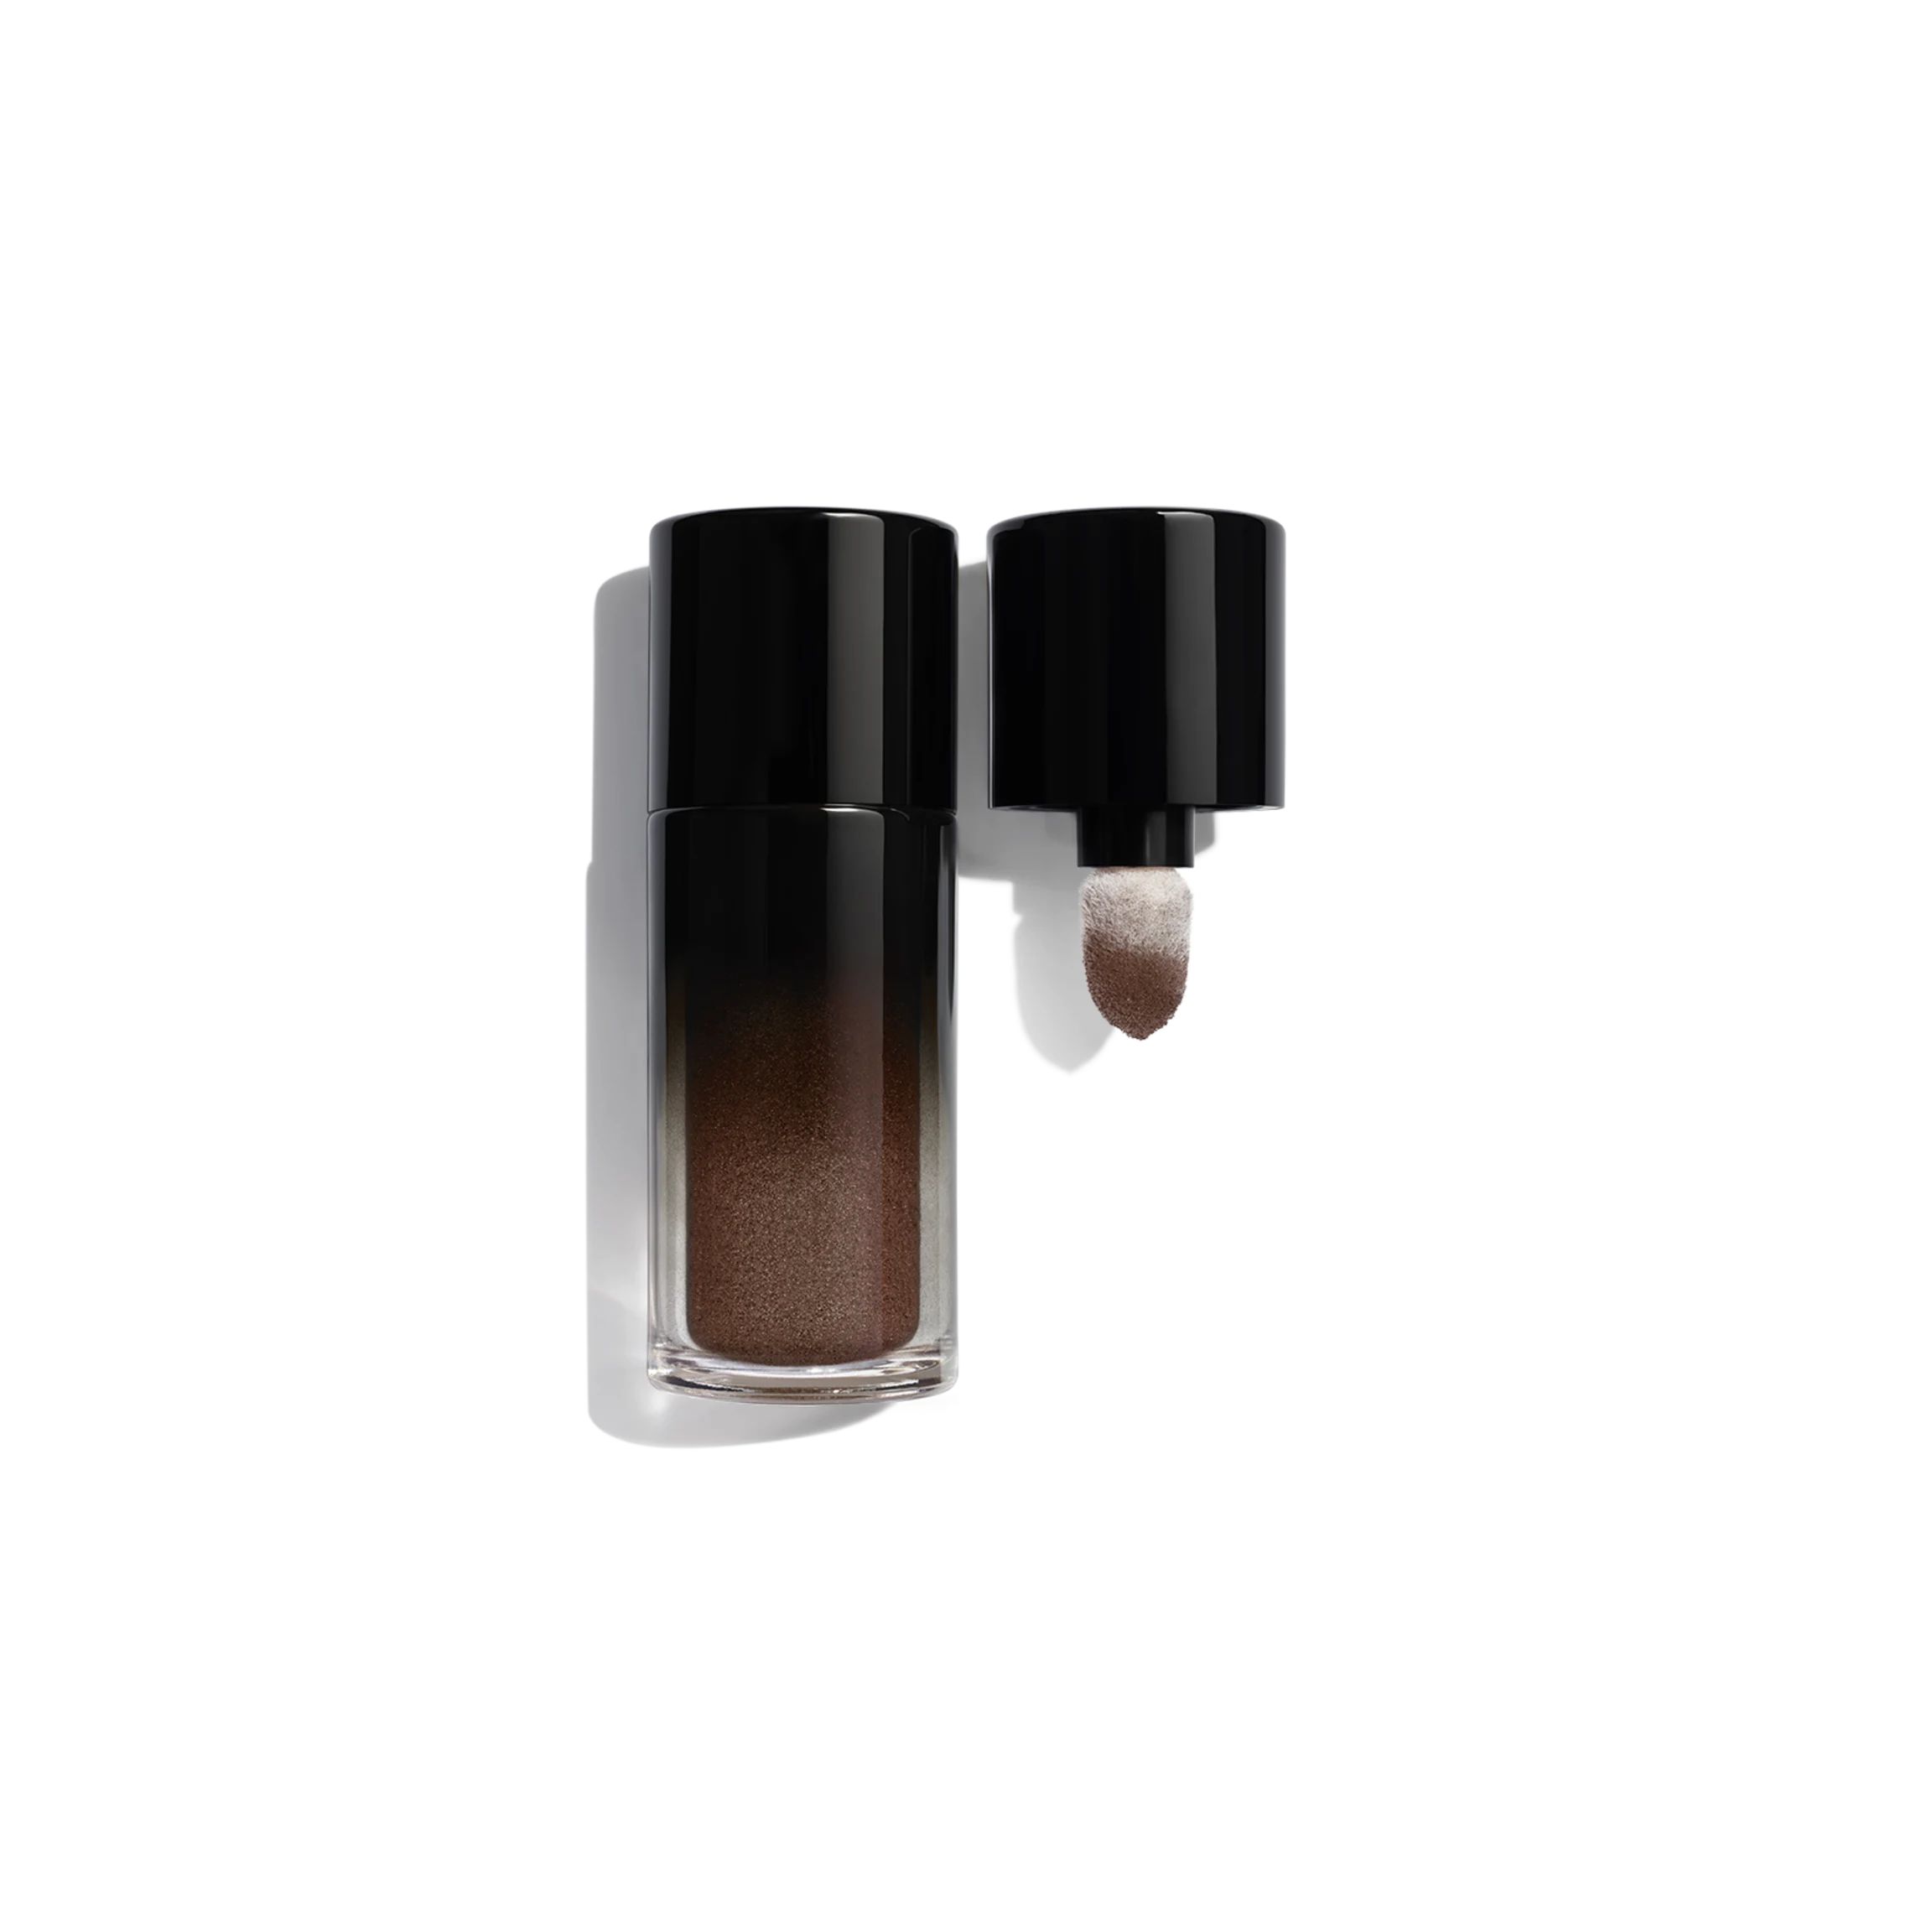 OMBRE PREMIÈRE LIBRE Loose eyeshadow  intense, longwear colour 404 - Chêne brun | CHANEL | Chanel, Inc. (US)